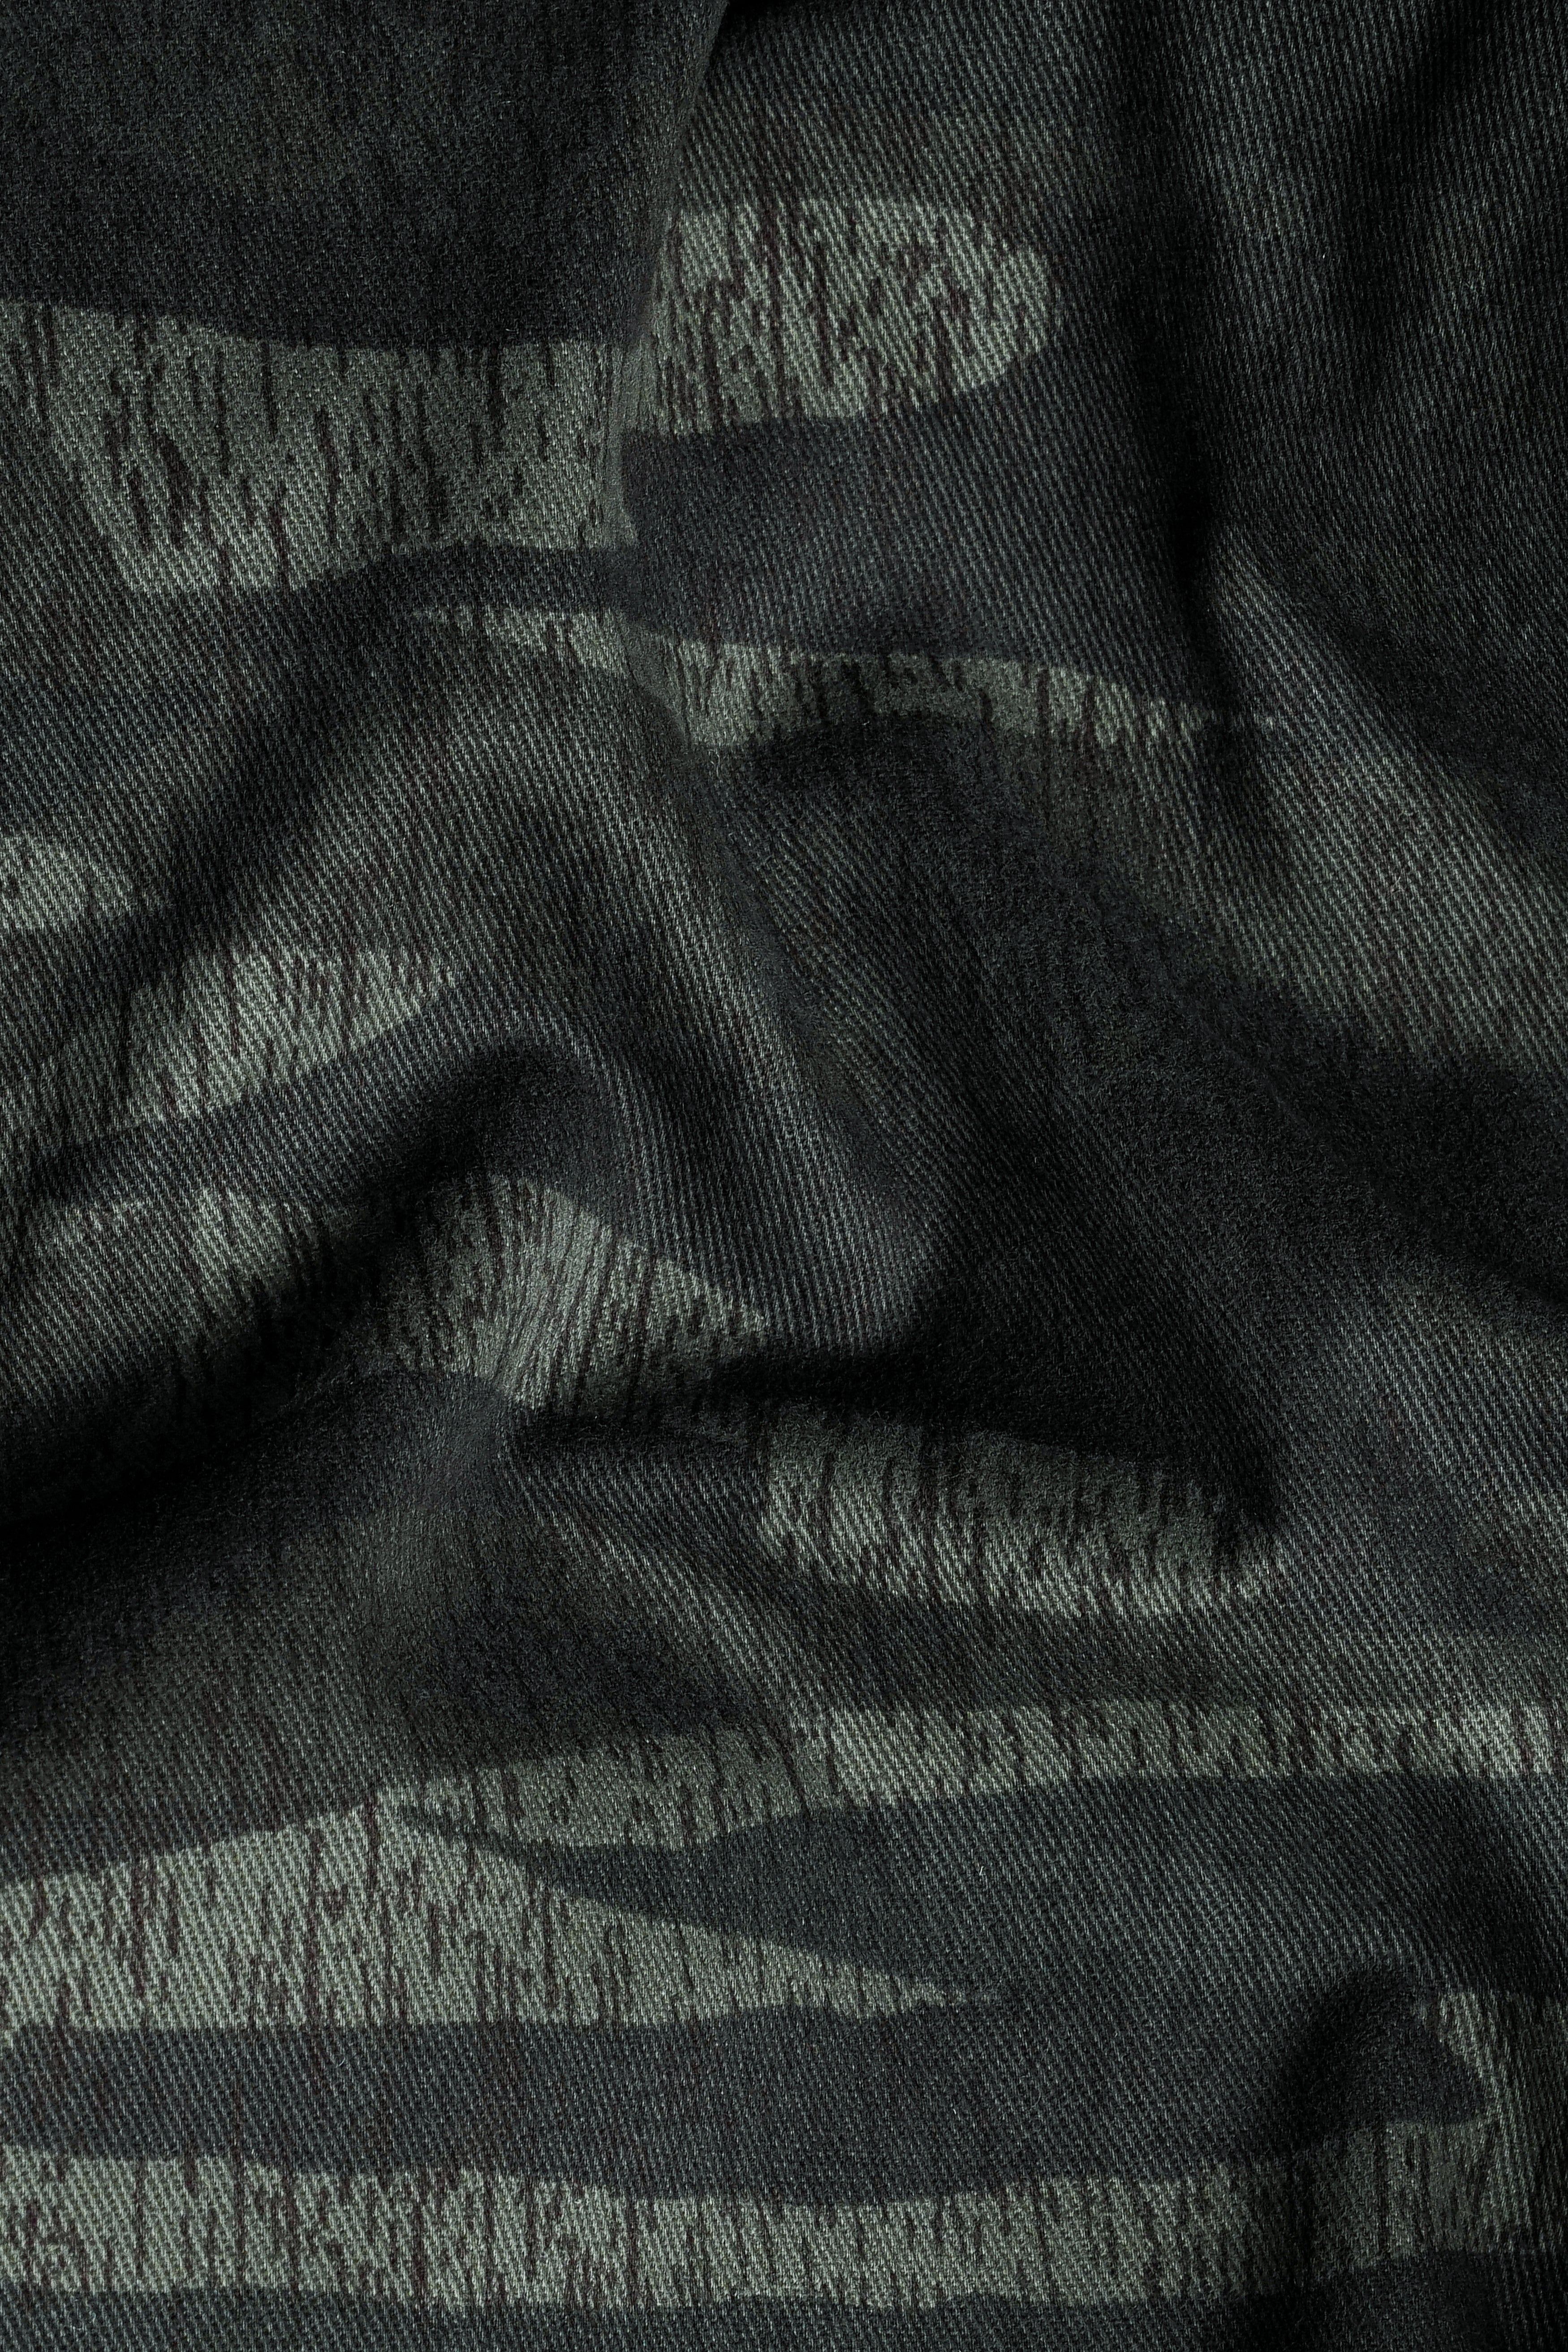 Xanadu Green and Davy Brown Camouflage Premium Cotton Designer Blazer With Jade Black Jeans